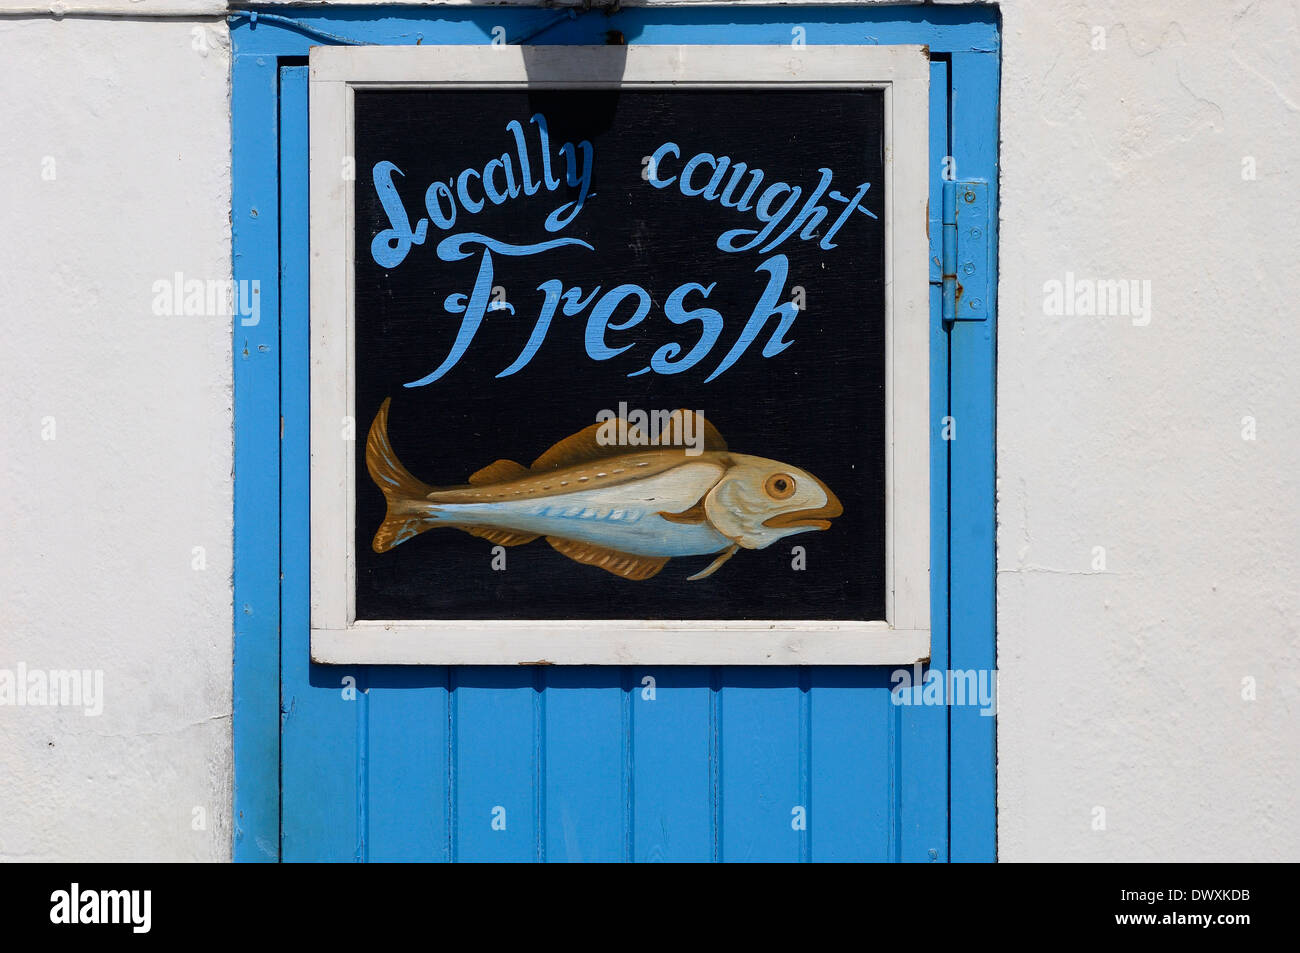 Dipinto a mano pesce di mare shop segno. Hastings. East Sussex. Regno Unito Foto Stock